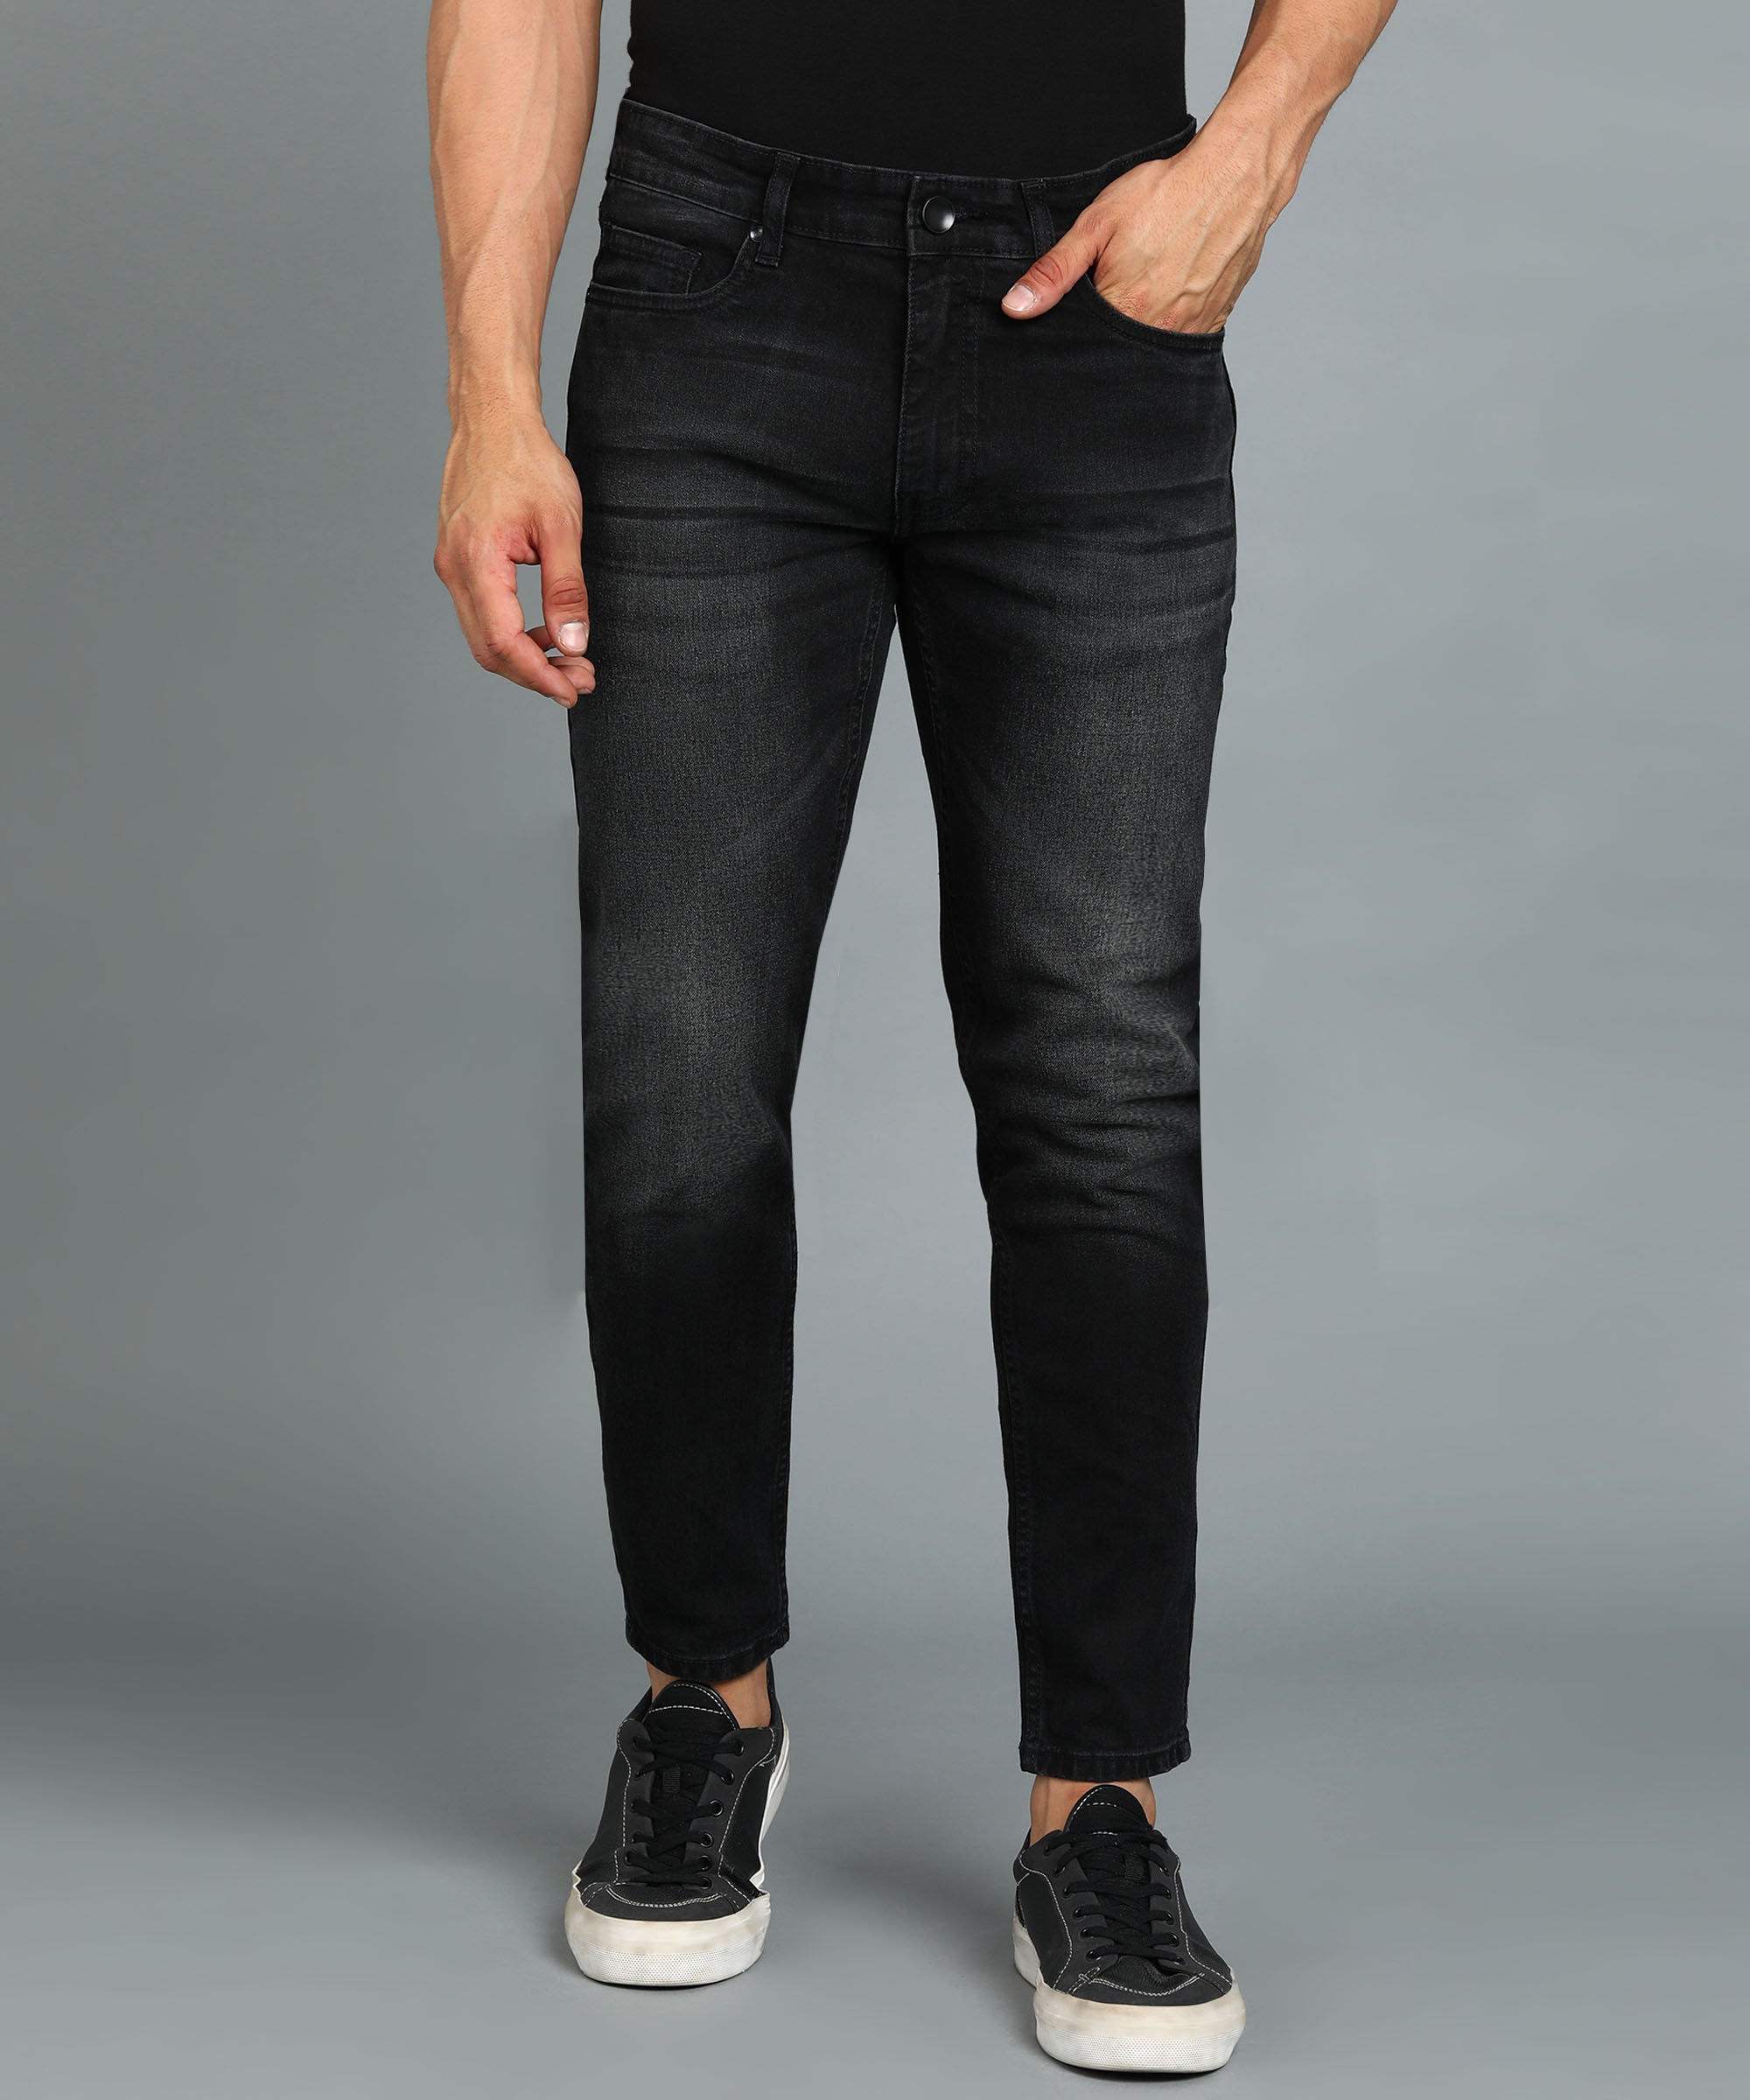 Men's Black Slim Fit Washed Jeans Stretchable